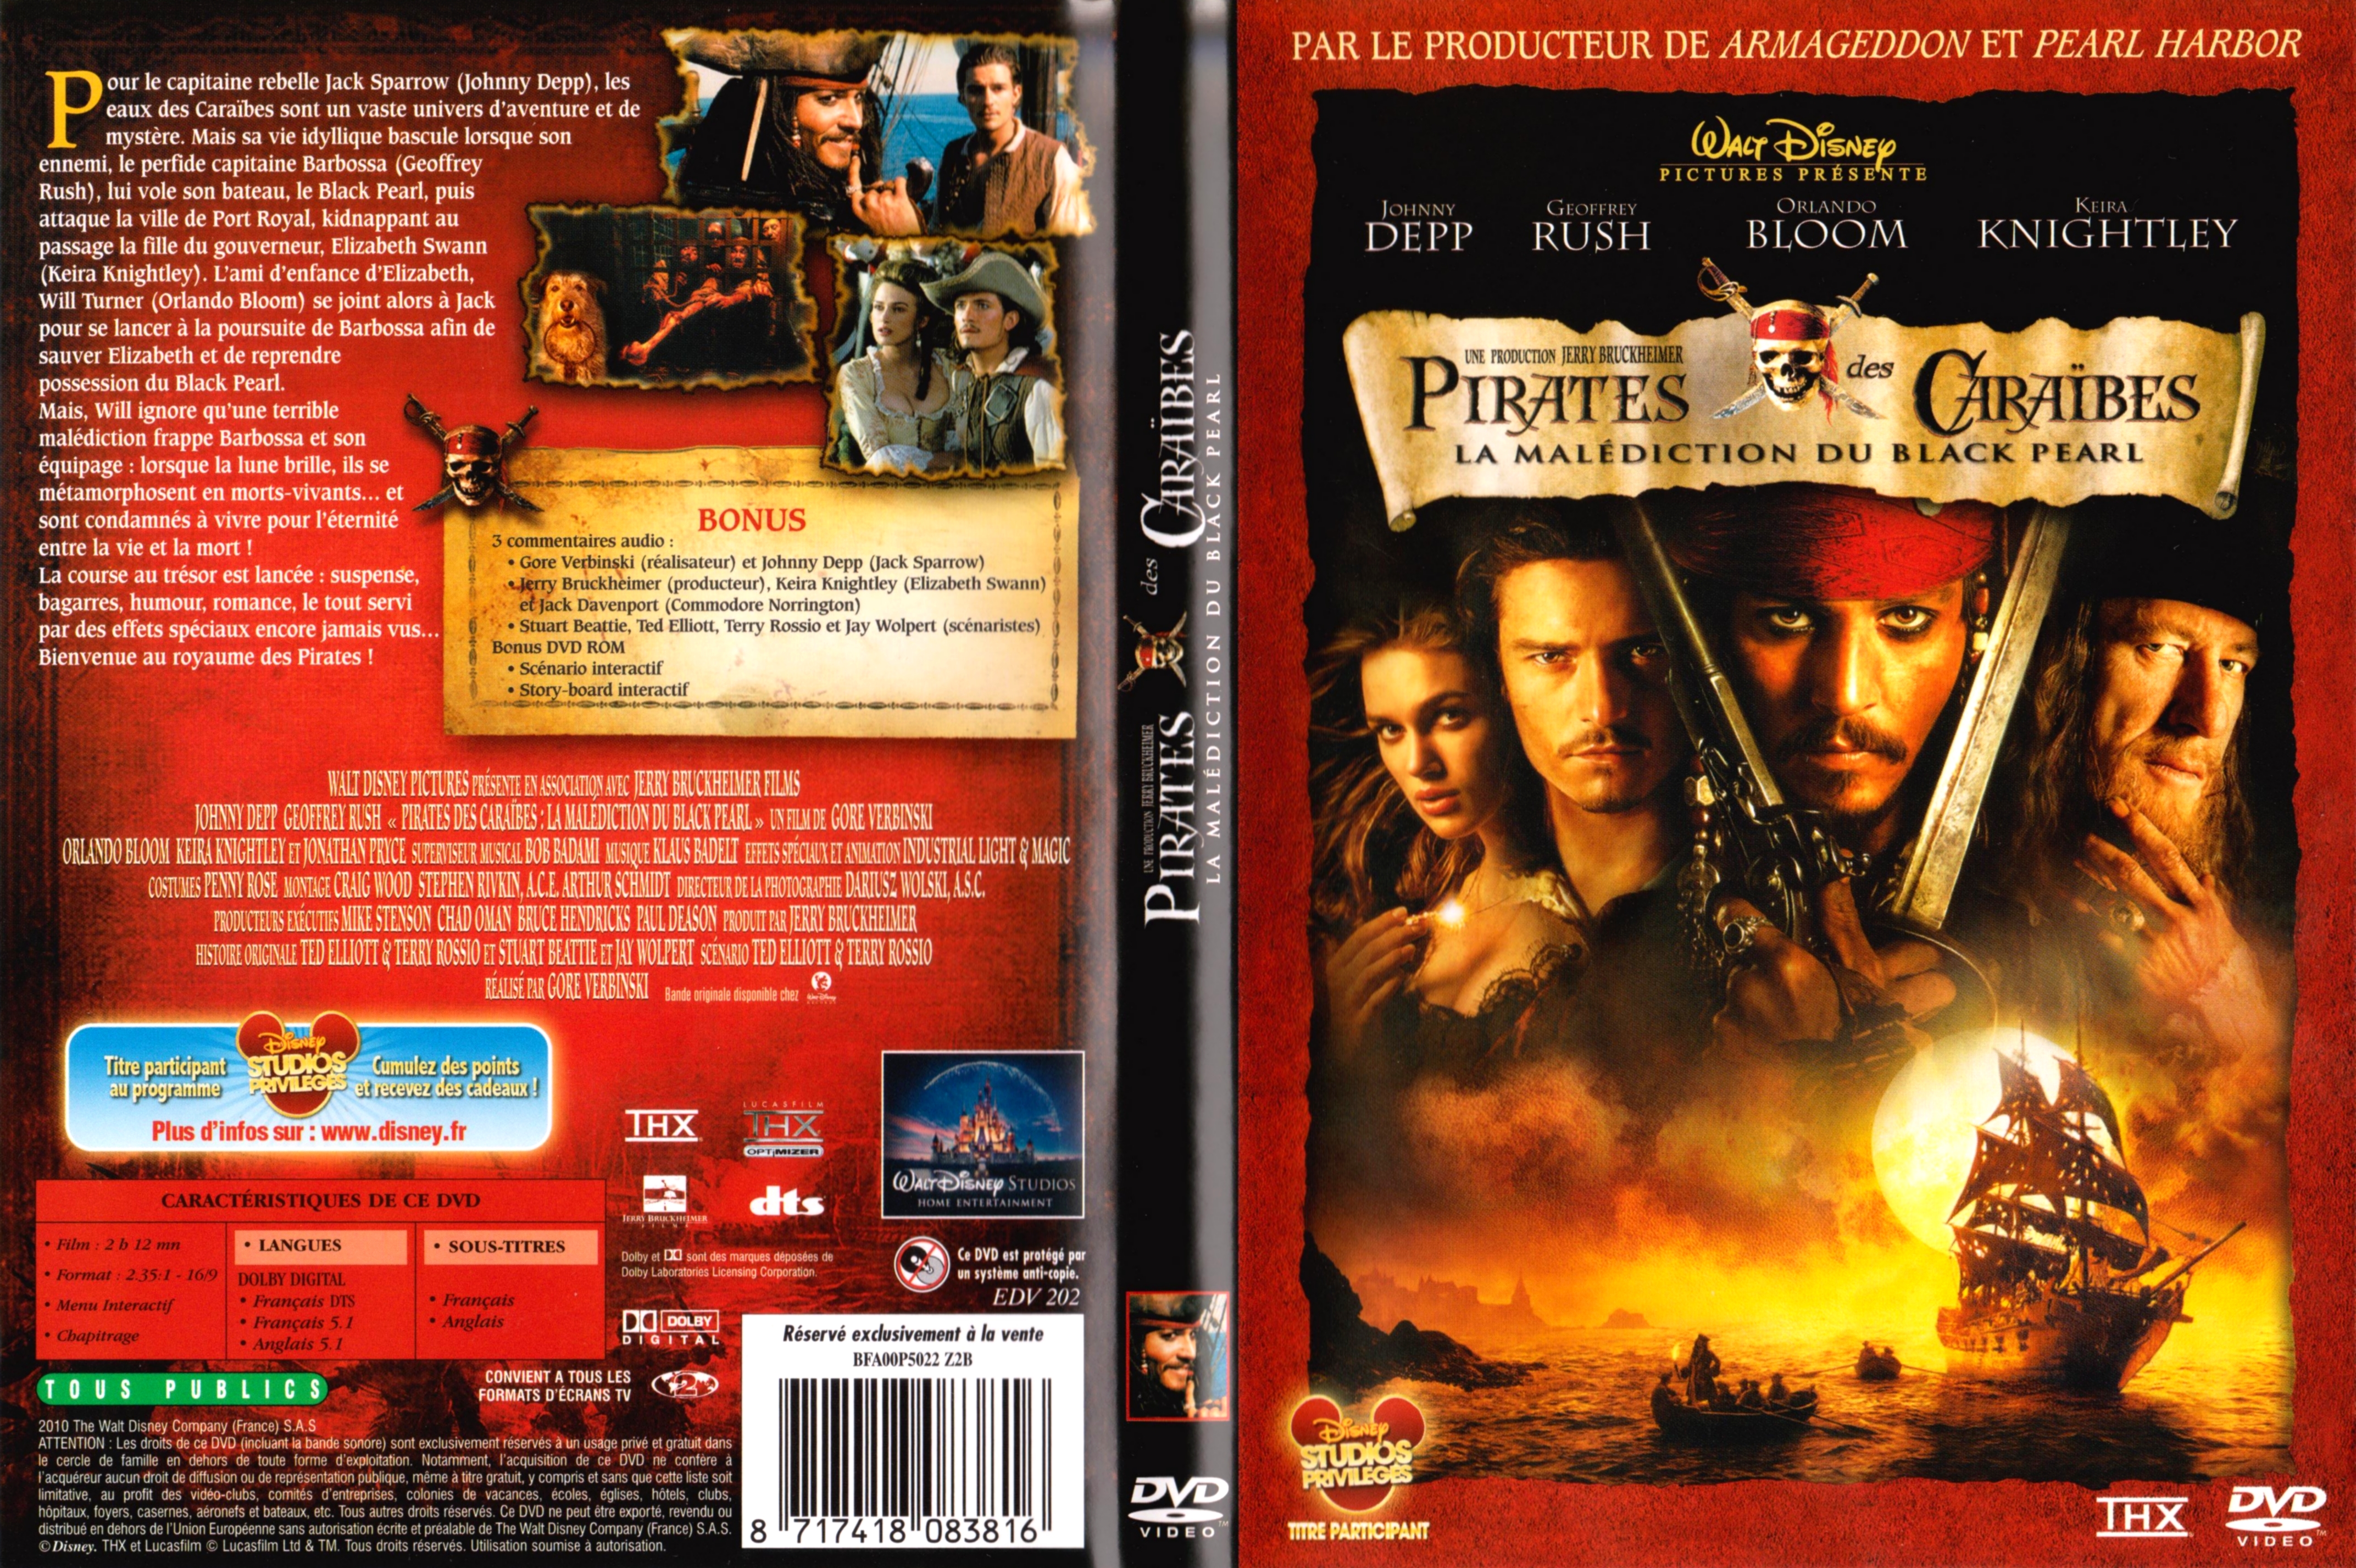 Jaquette DVD Pirates des caraibes v3